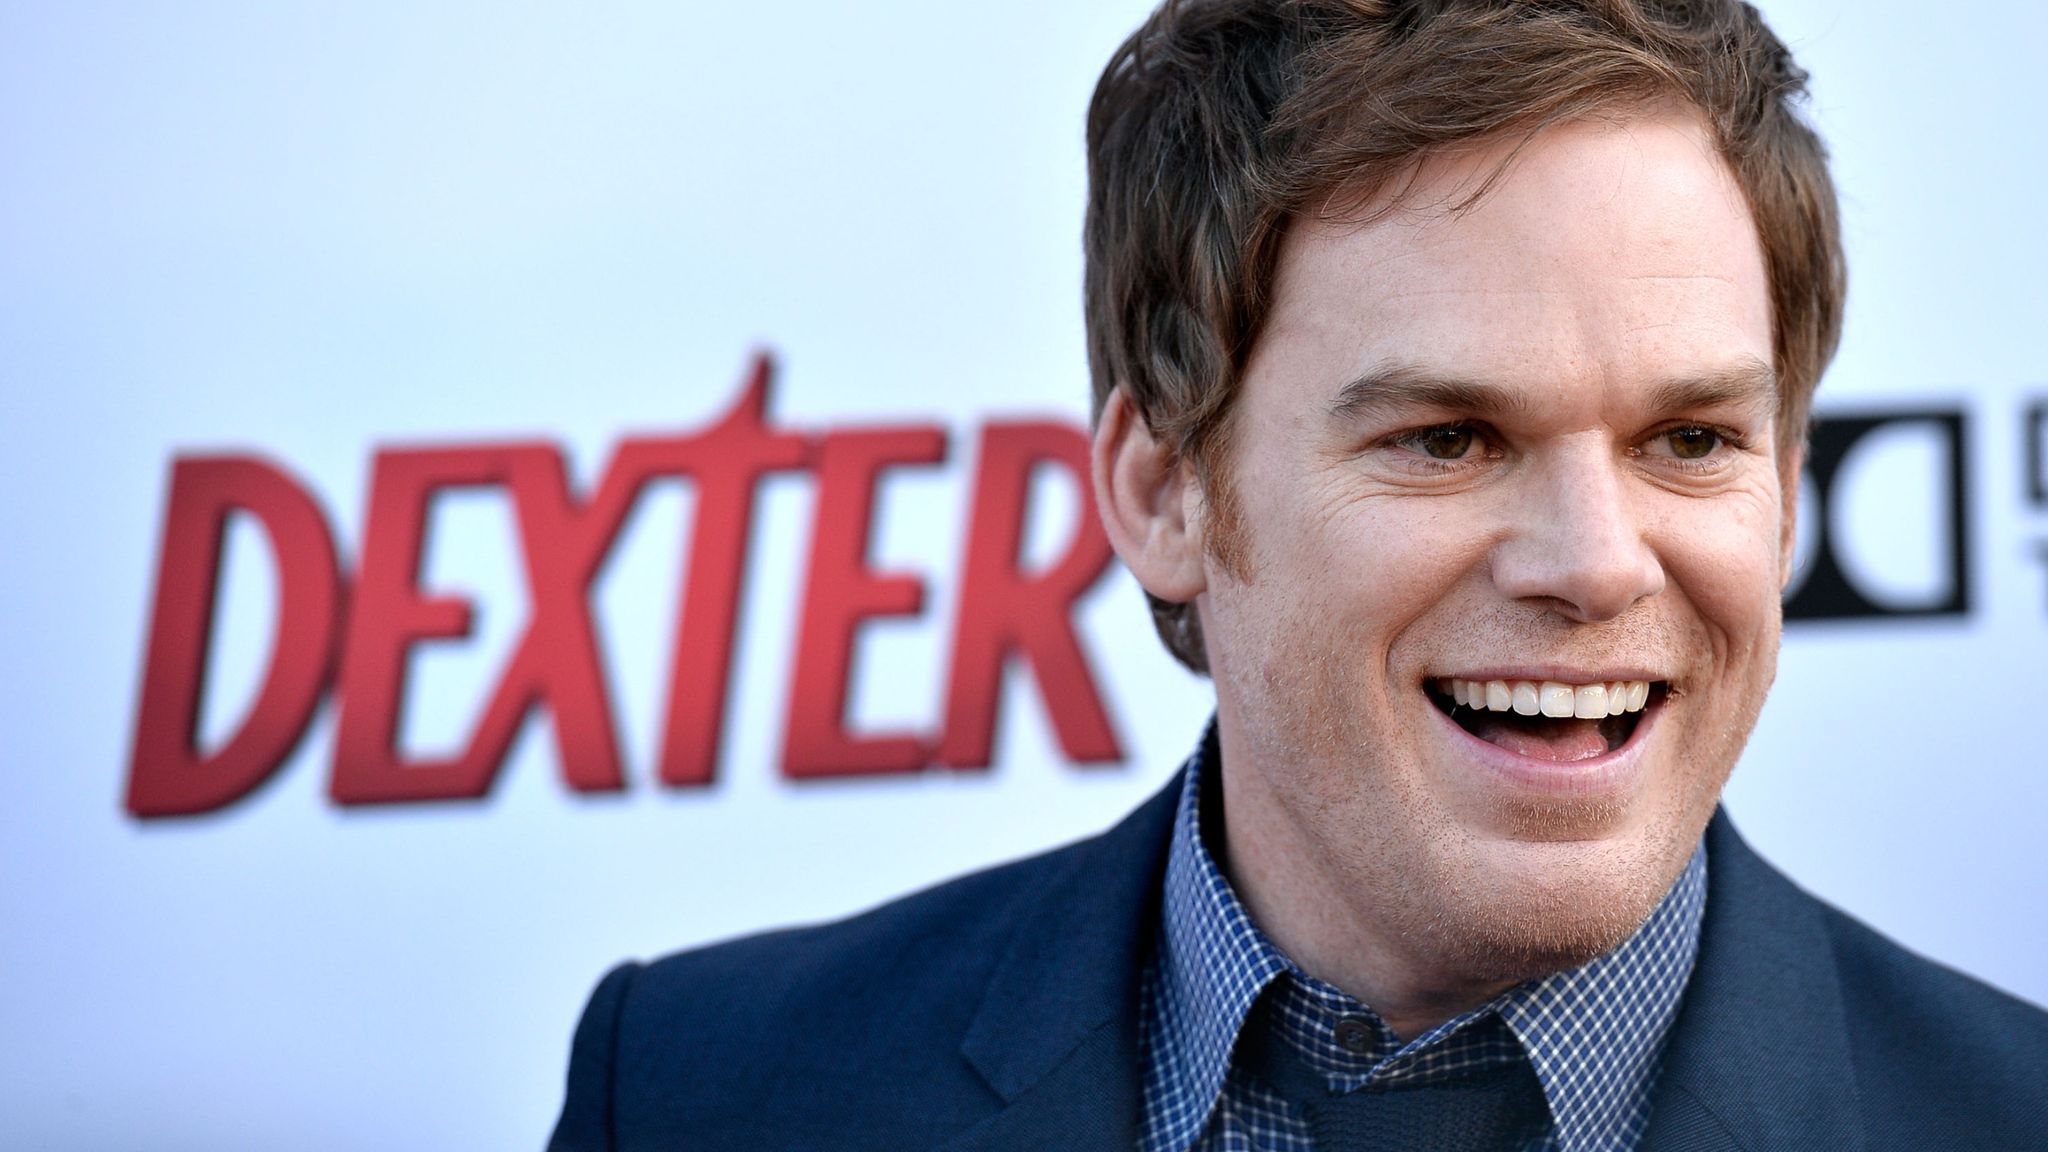 "Dexter" : la série culte revient avec une nouvelle saison en 2021